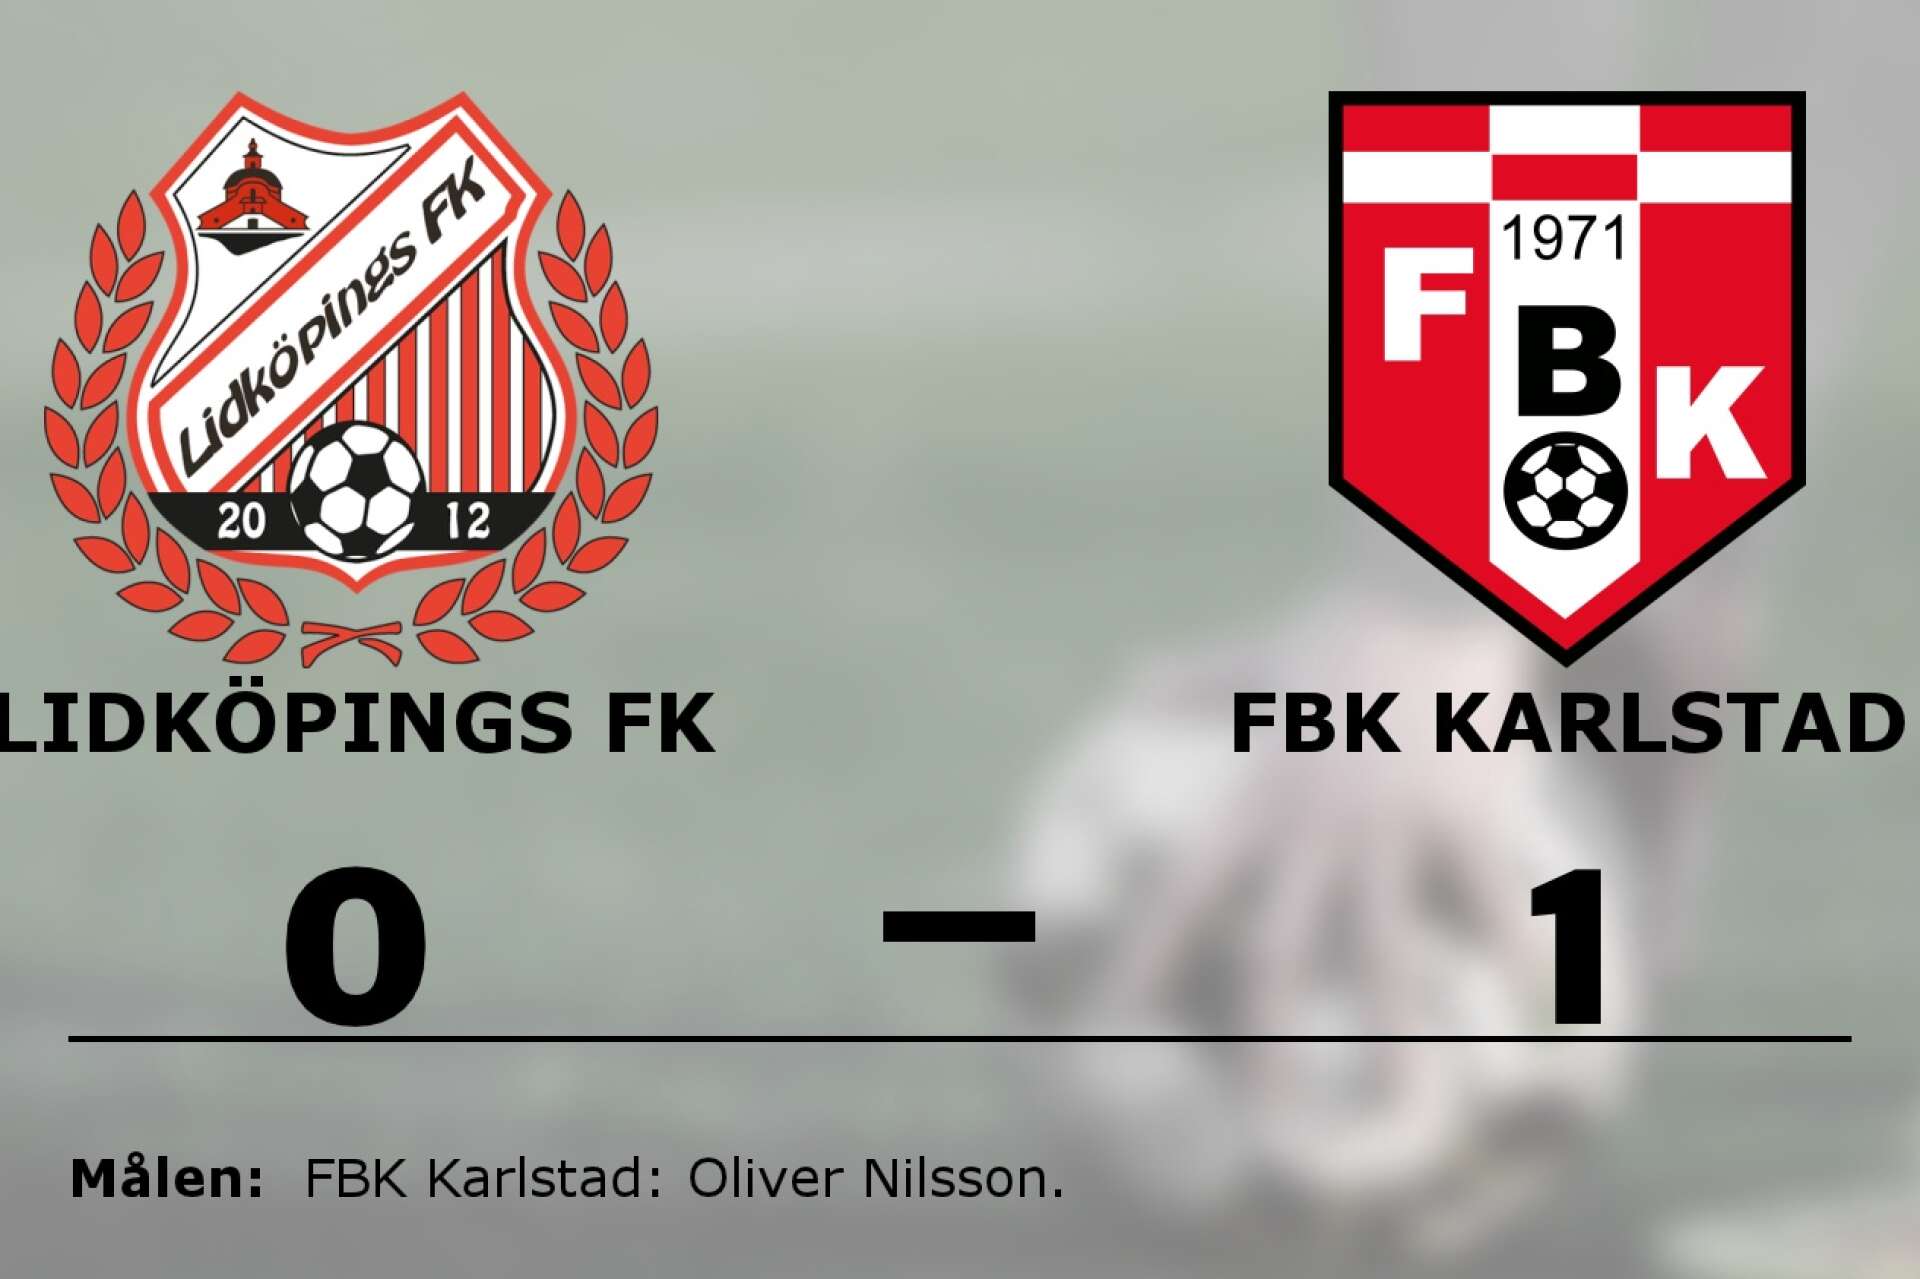 Lidköpings FK förlorade mot FBK Karlstad